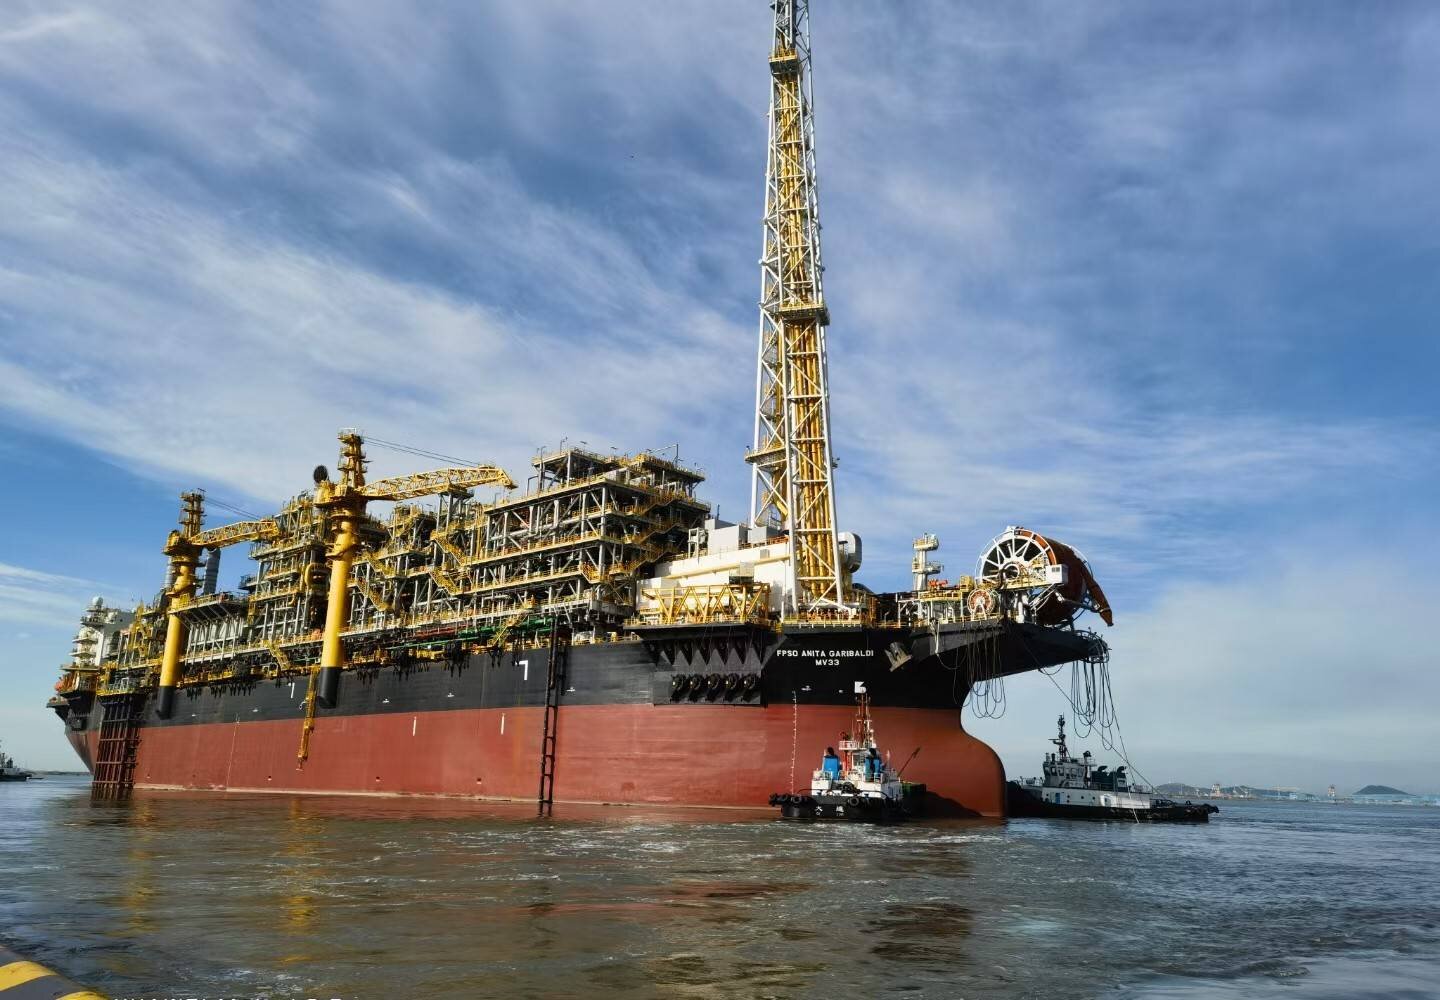 A plataforma FPSO Anita Garibaldi faz parte do projeto da Petrobras que visa revitalizar a produção de petróleo e gás natural no Campo de Marlim. A embarcação chegou ao Estaleiro Jurong Aracruz, onde passará por atividades de comissionamento e testes.